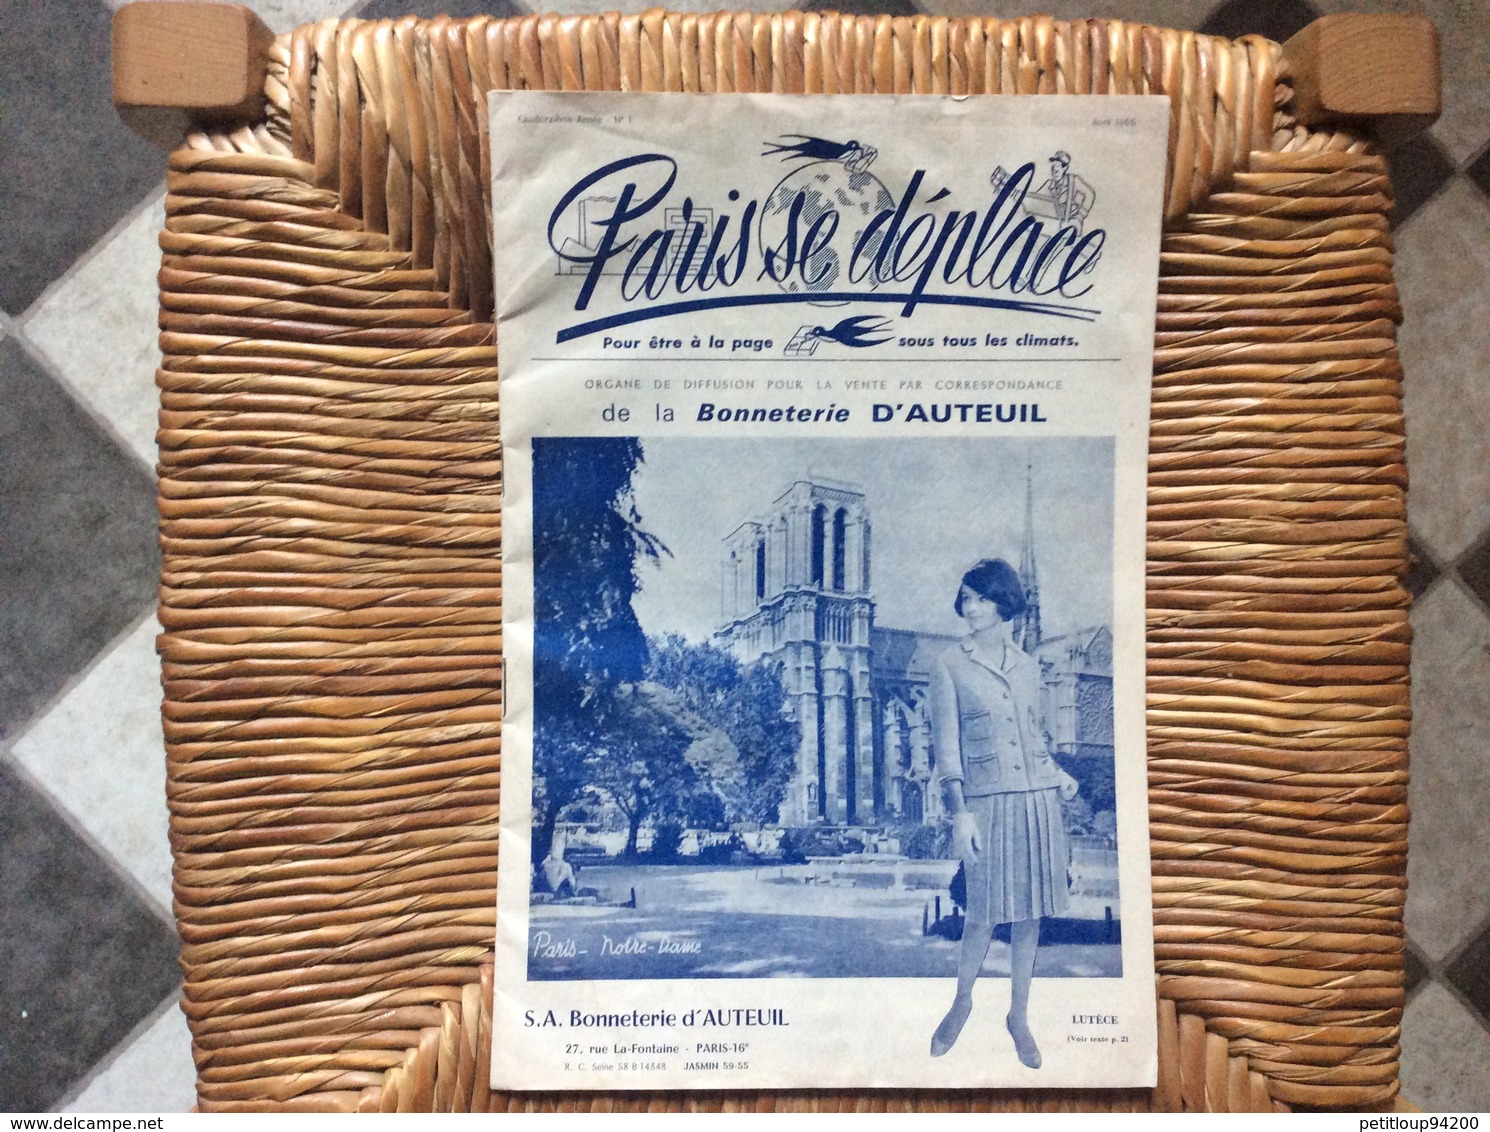 DOCUMENT COMMERCIAL CATALOGUE PARIS SE DÉPLACE No1 Bonneterie D’Auteuil  PARIS-NOTRE-DAME  Avril 1965 - Textile & Clothing